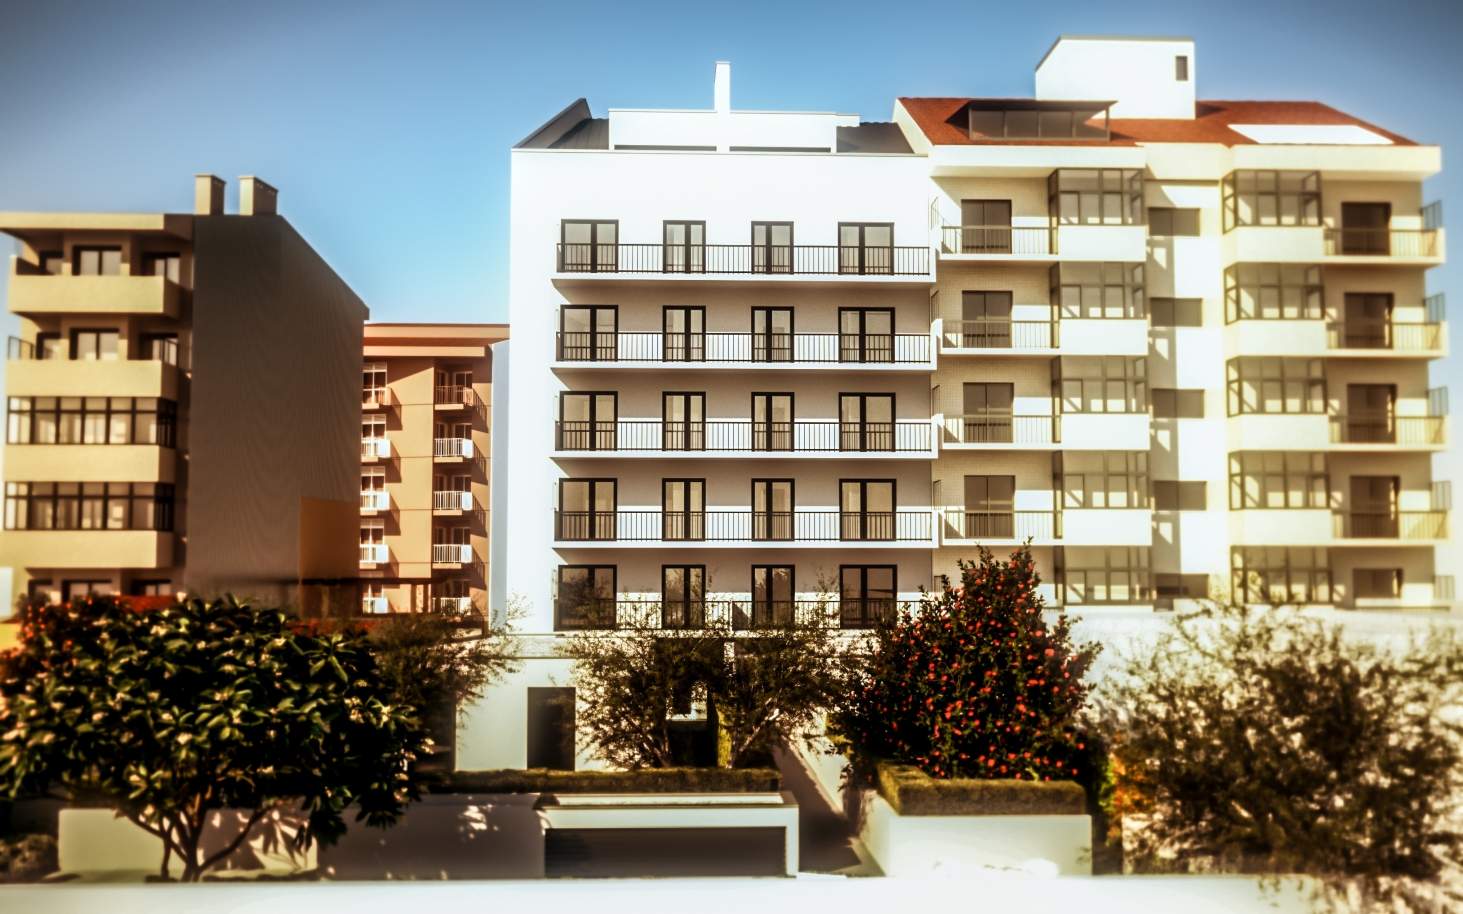 Sale apartment with garden in new development, Porto, Portugal_106279